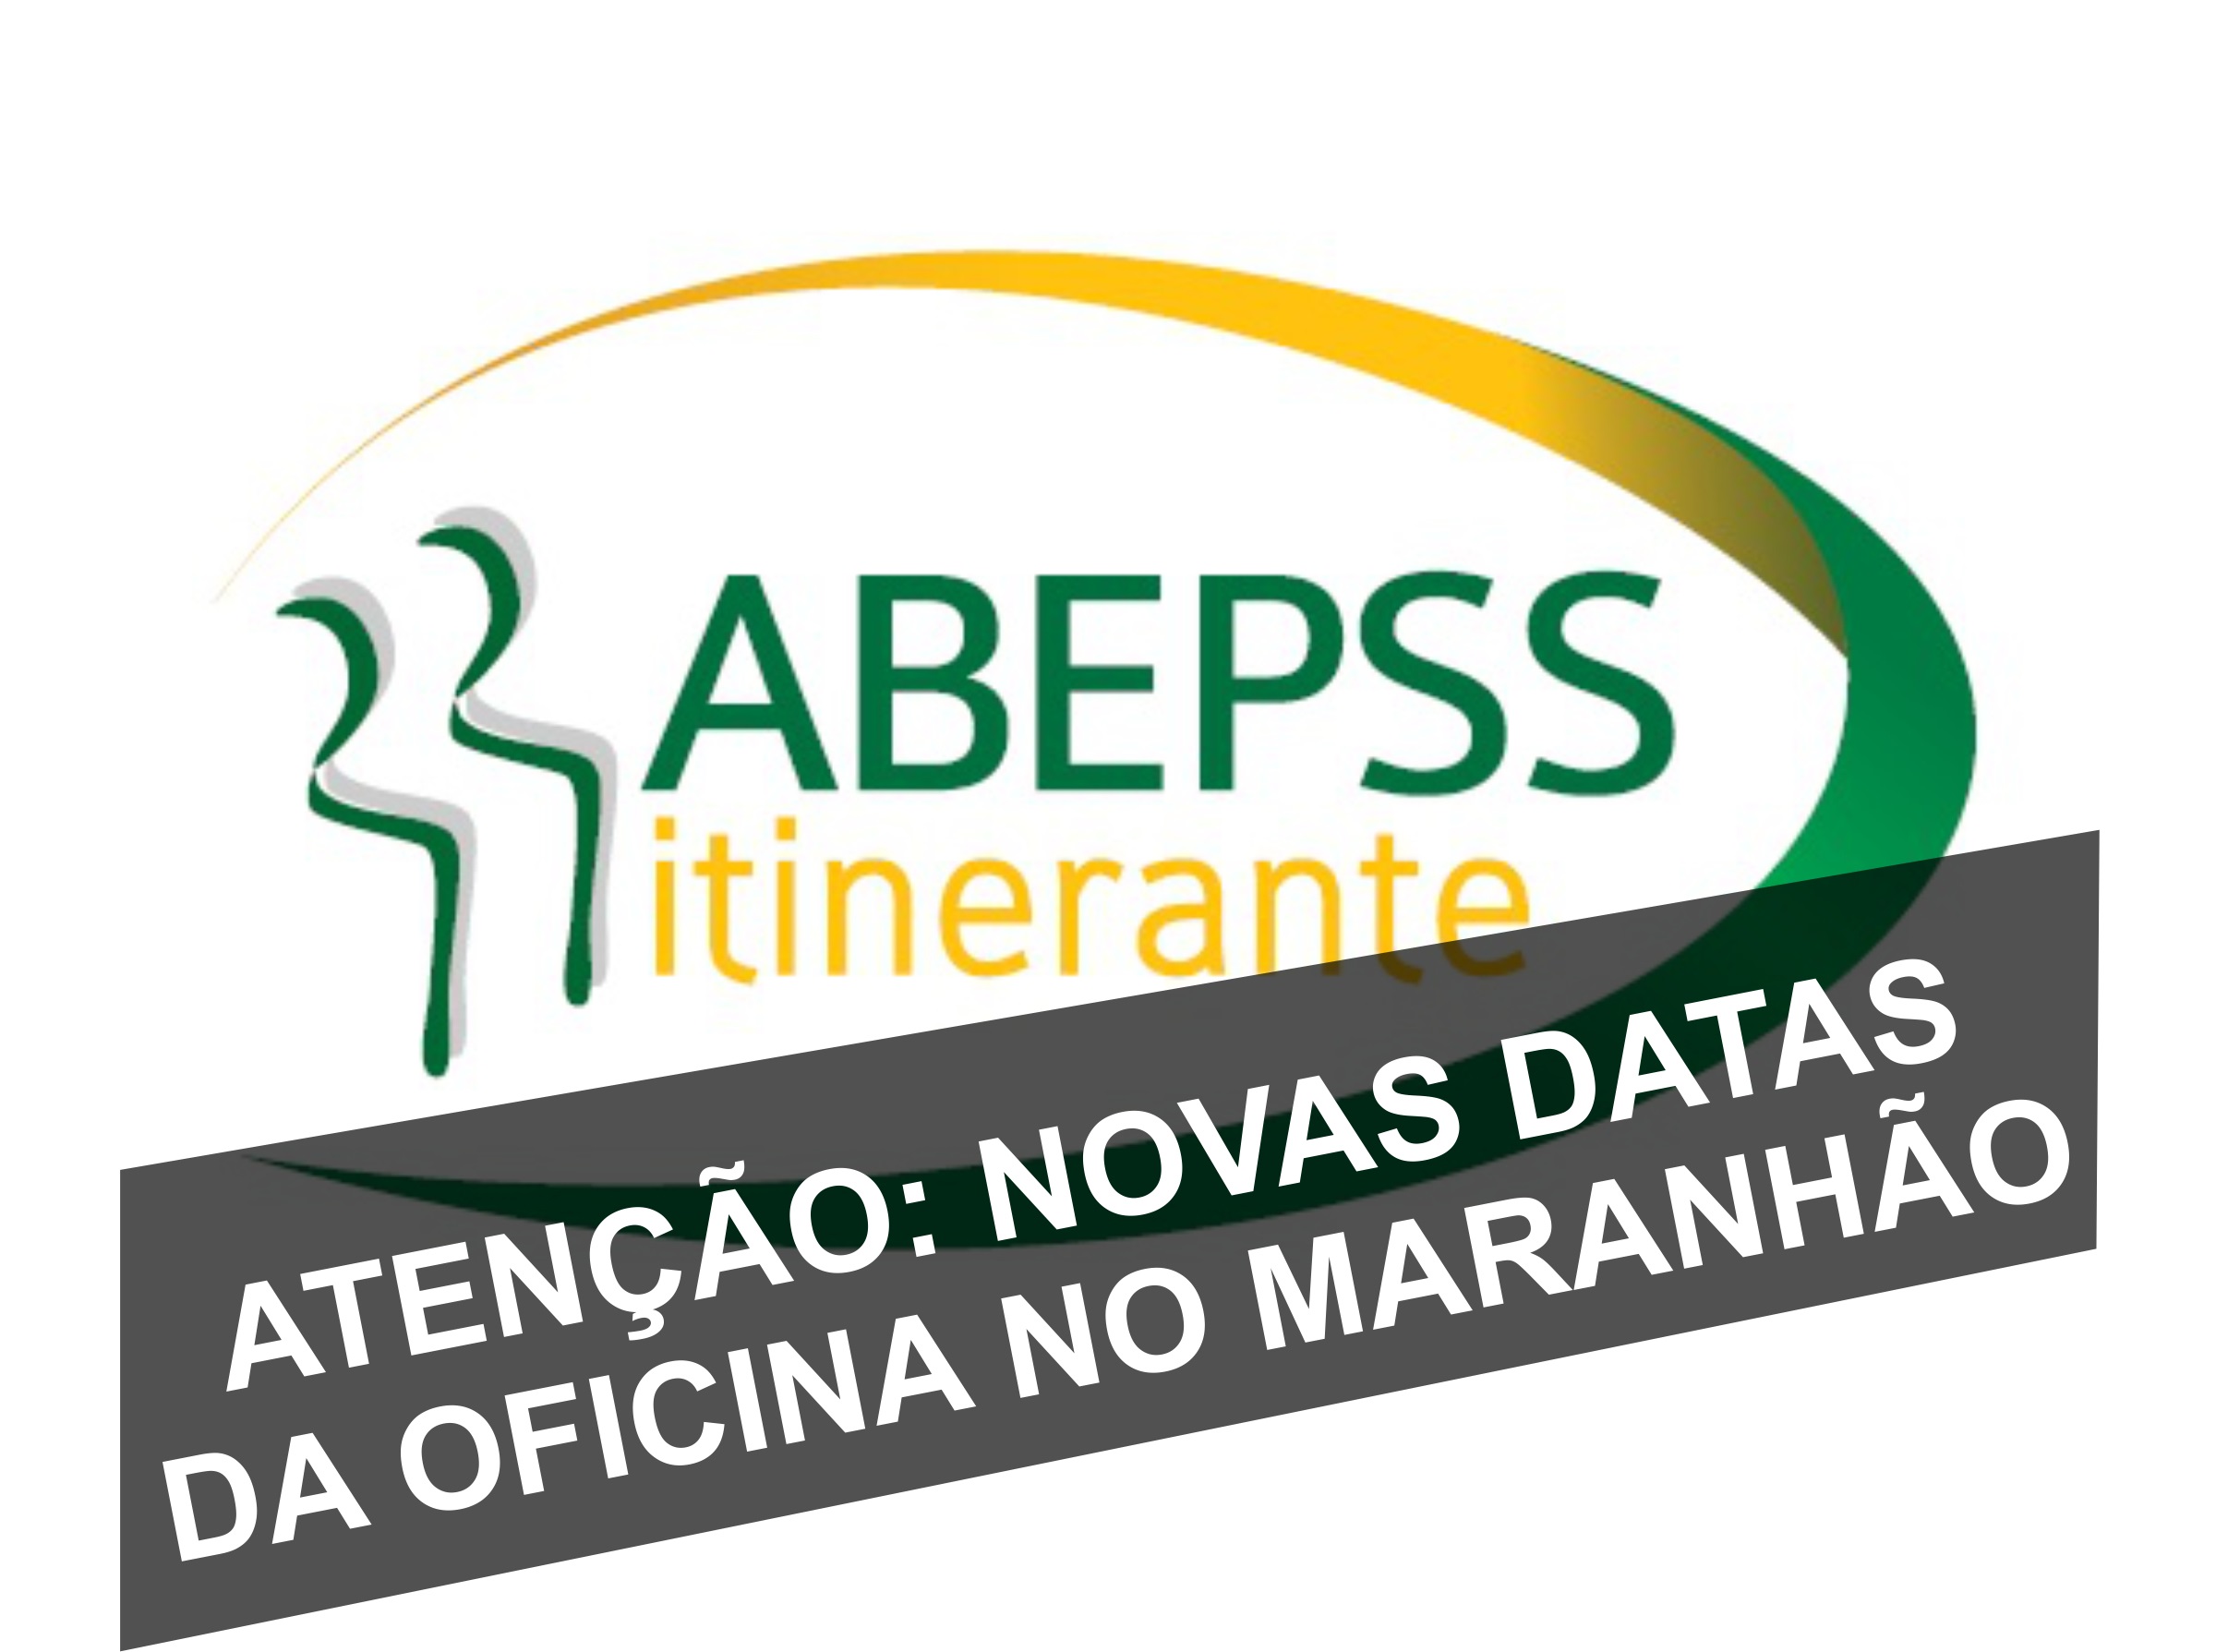 ABEPSS-Itinerante nova data